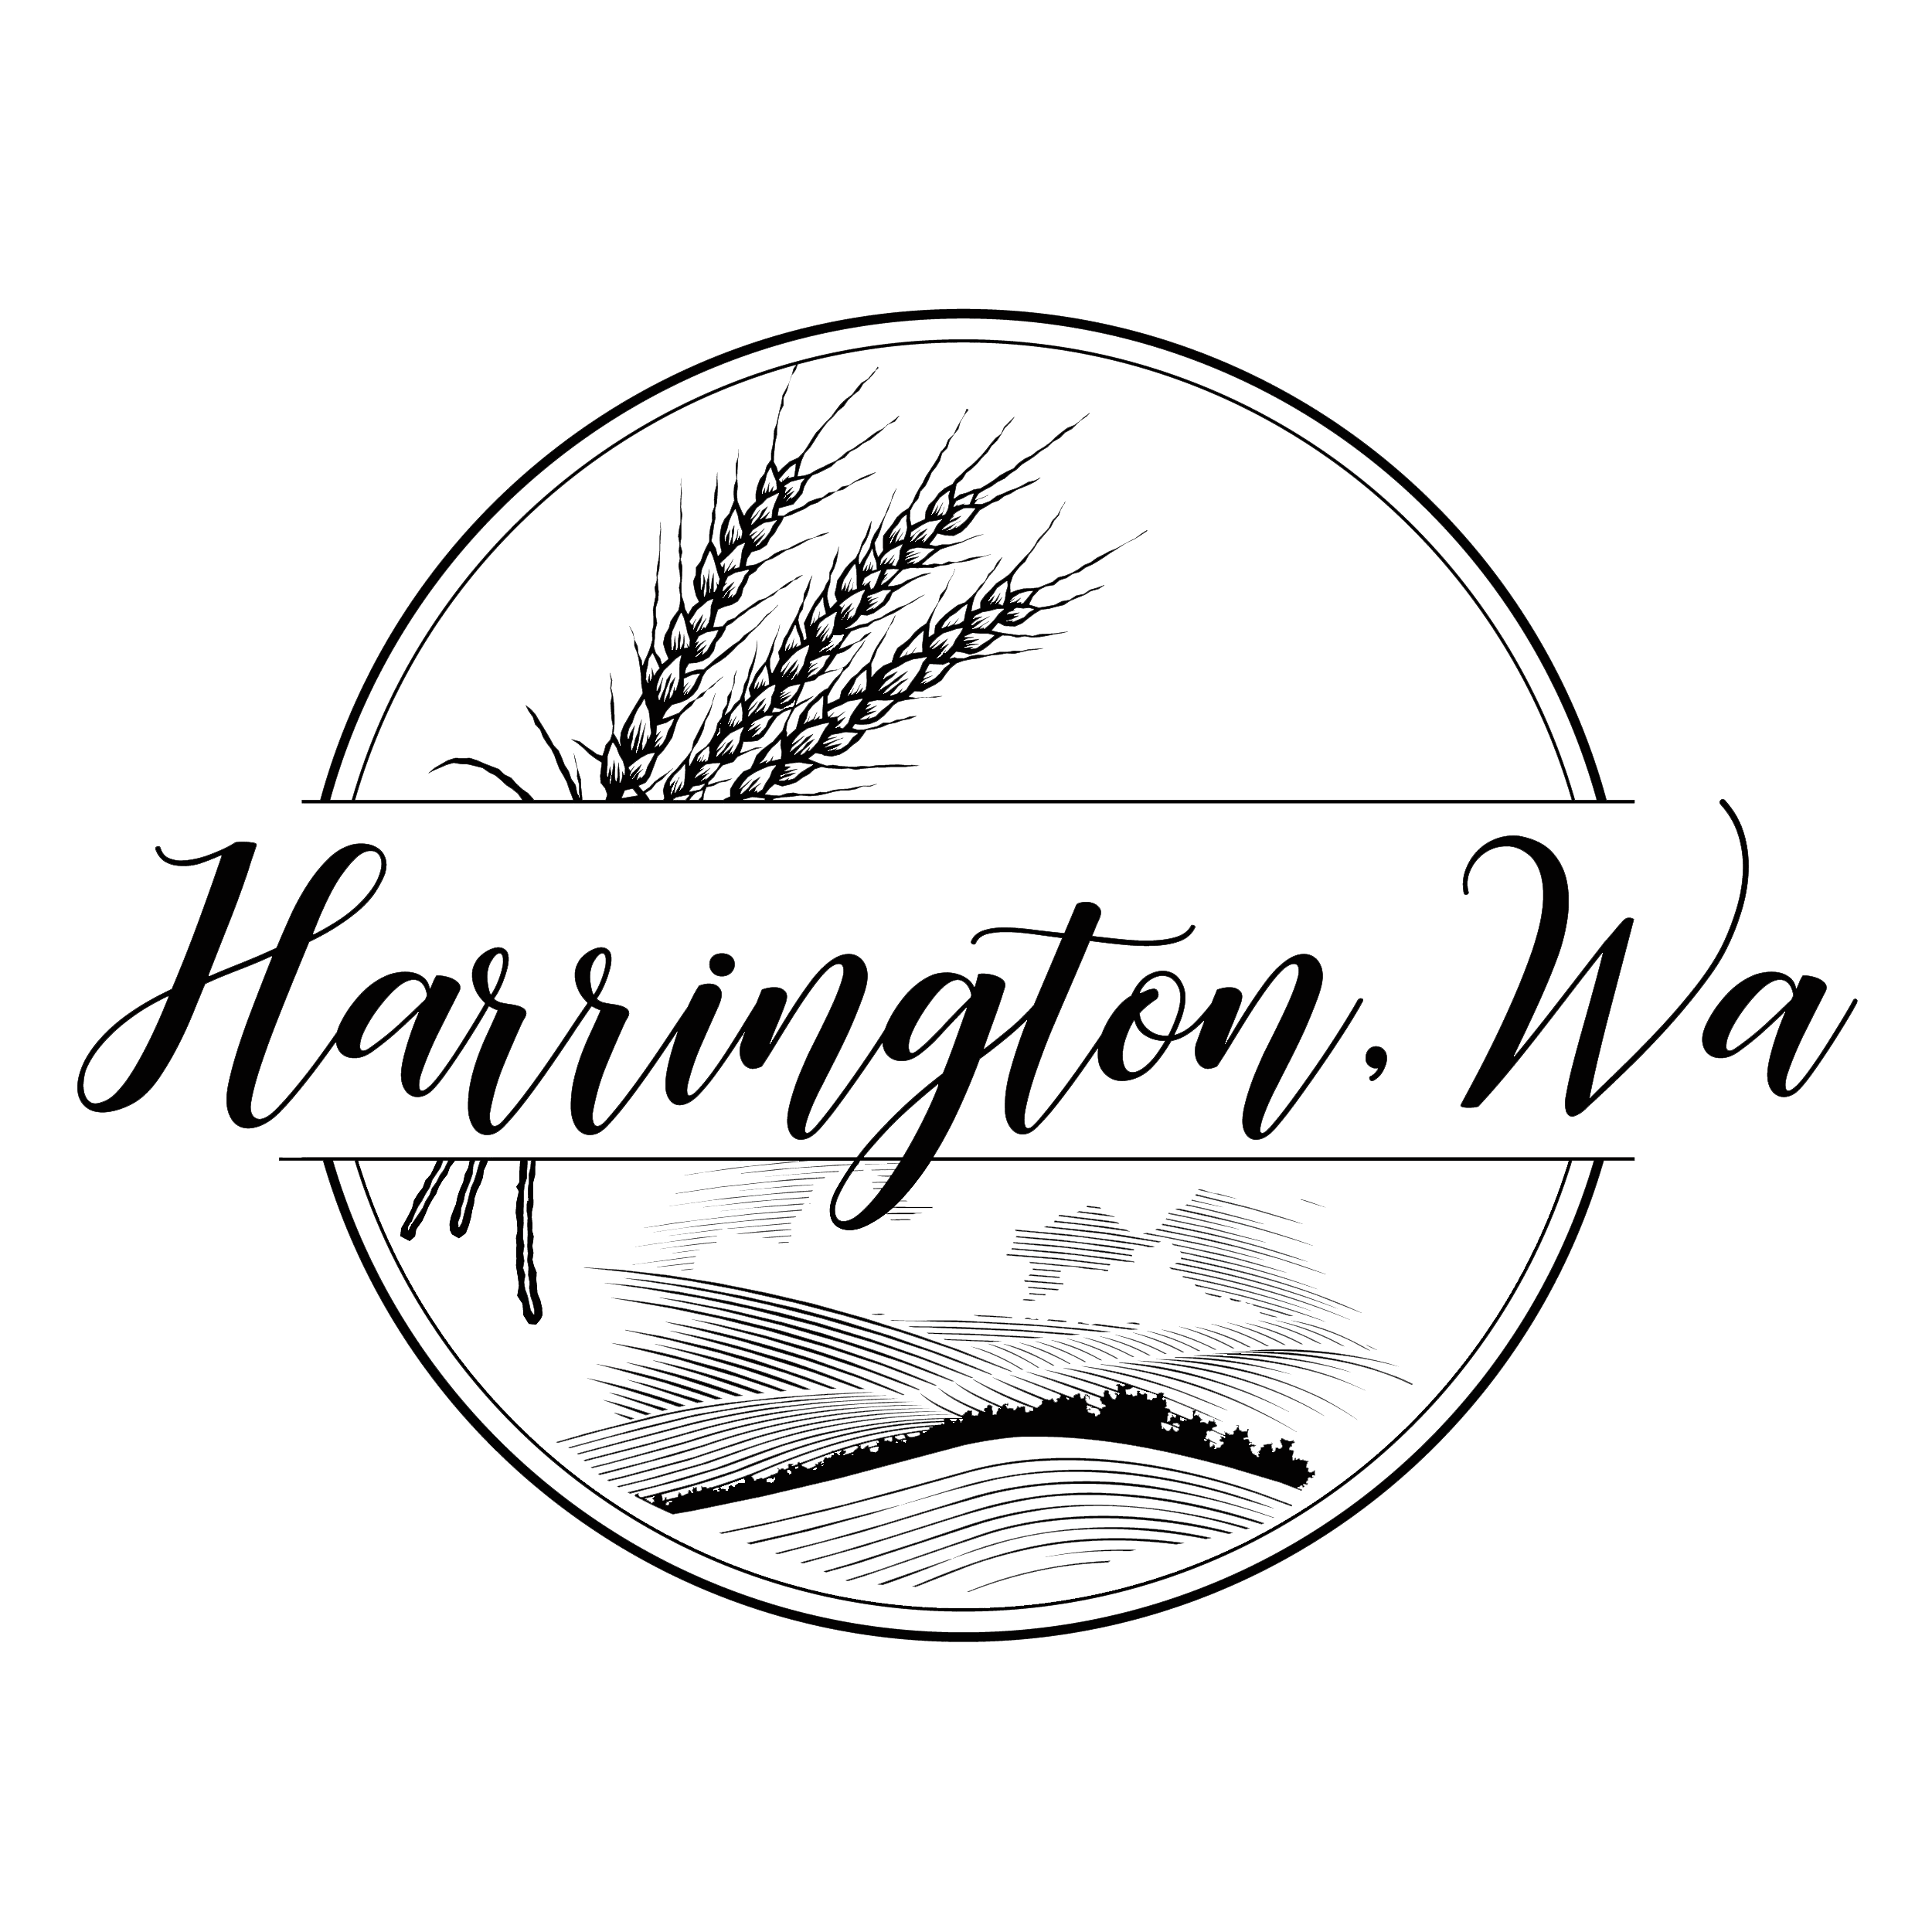 Logo for the City of Harrington, WA